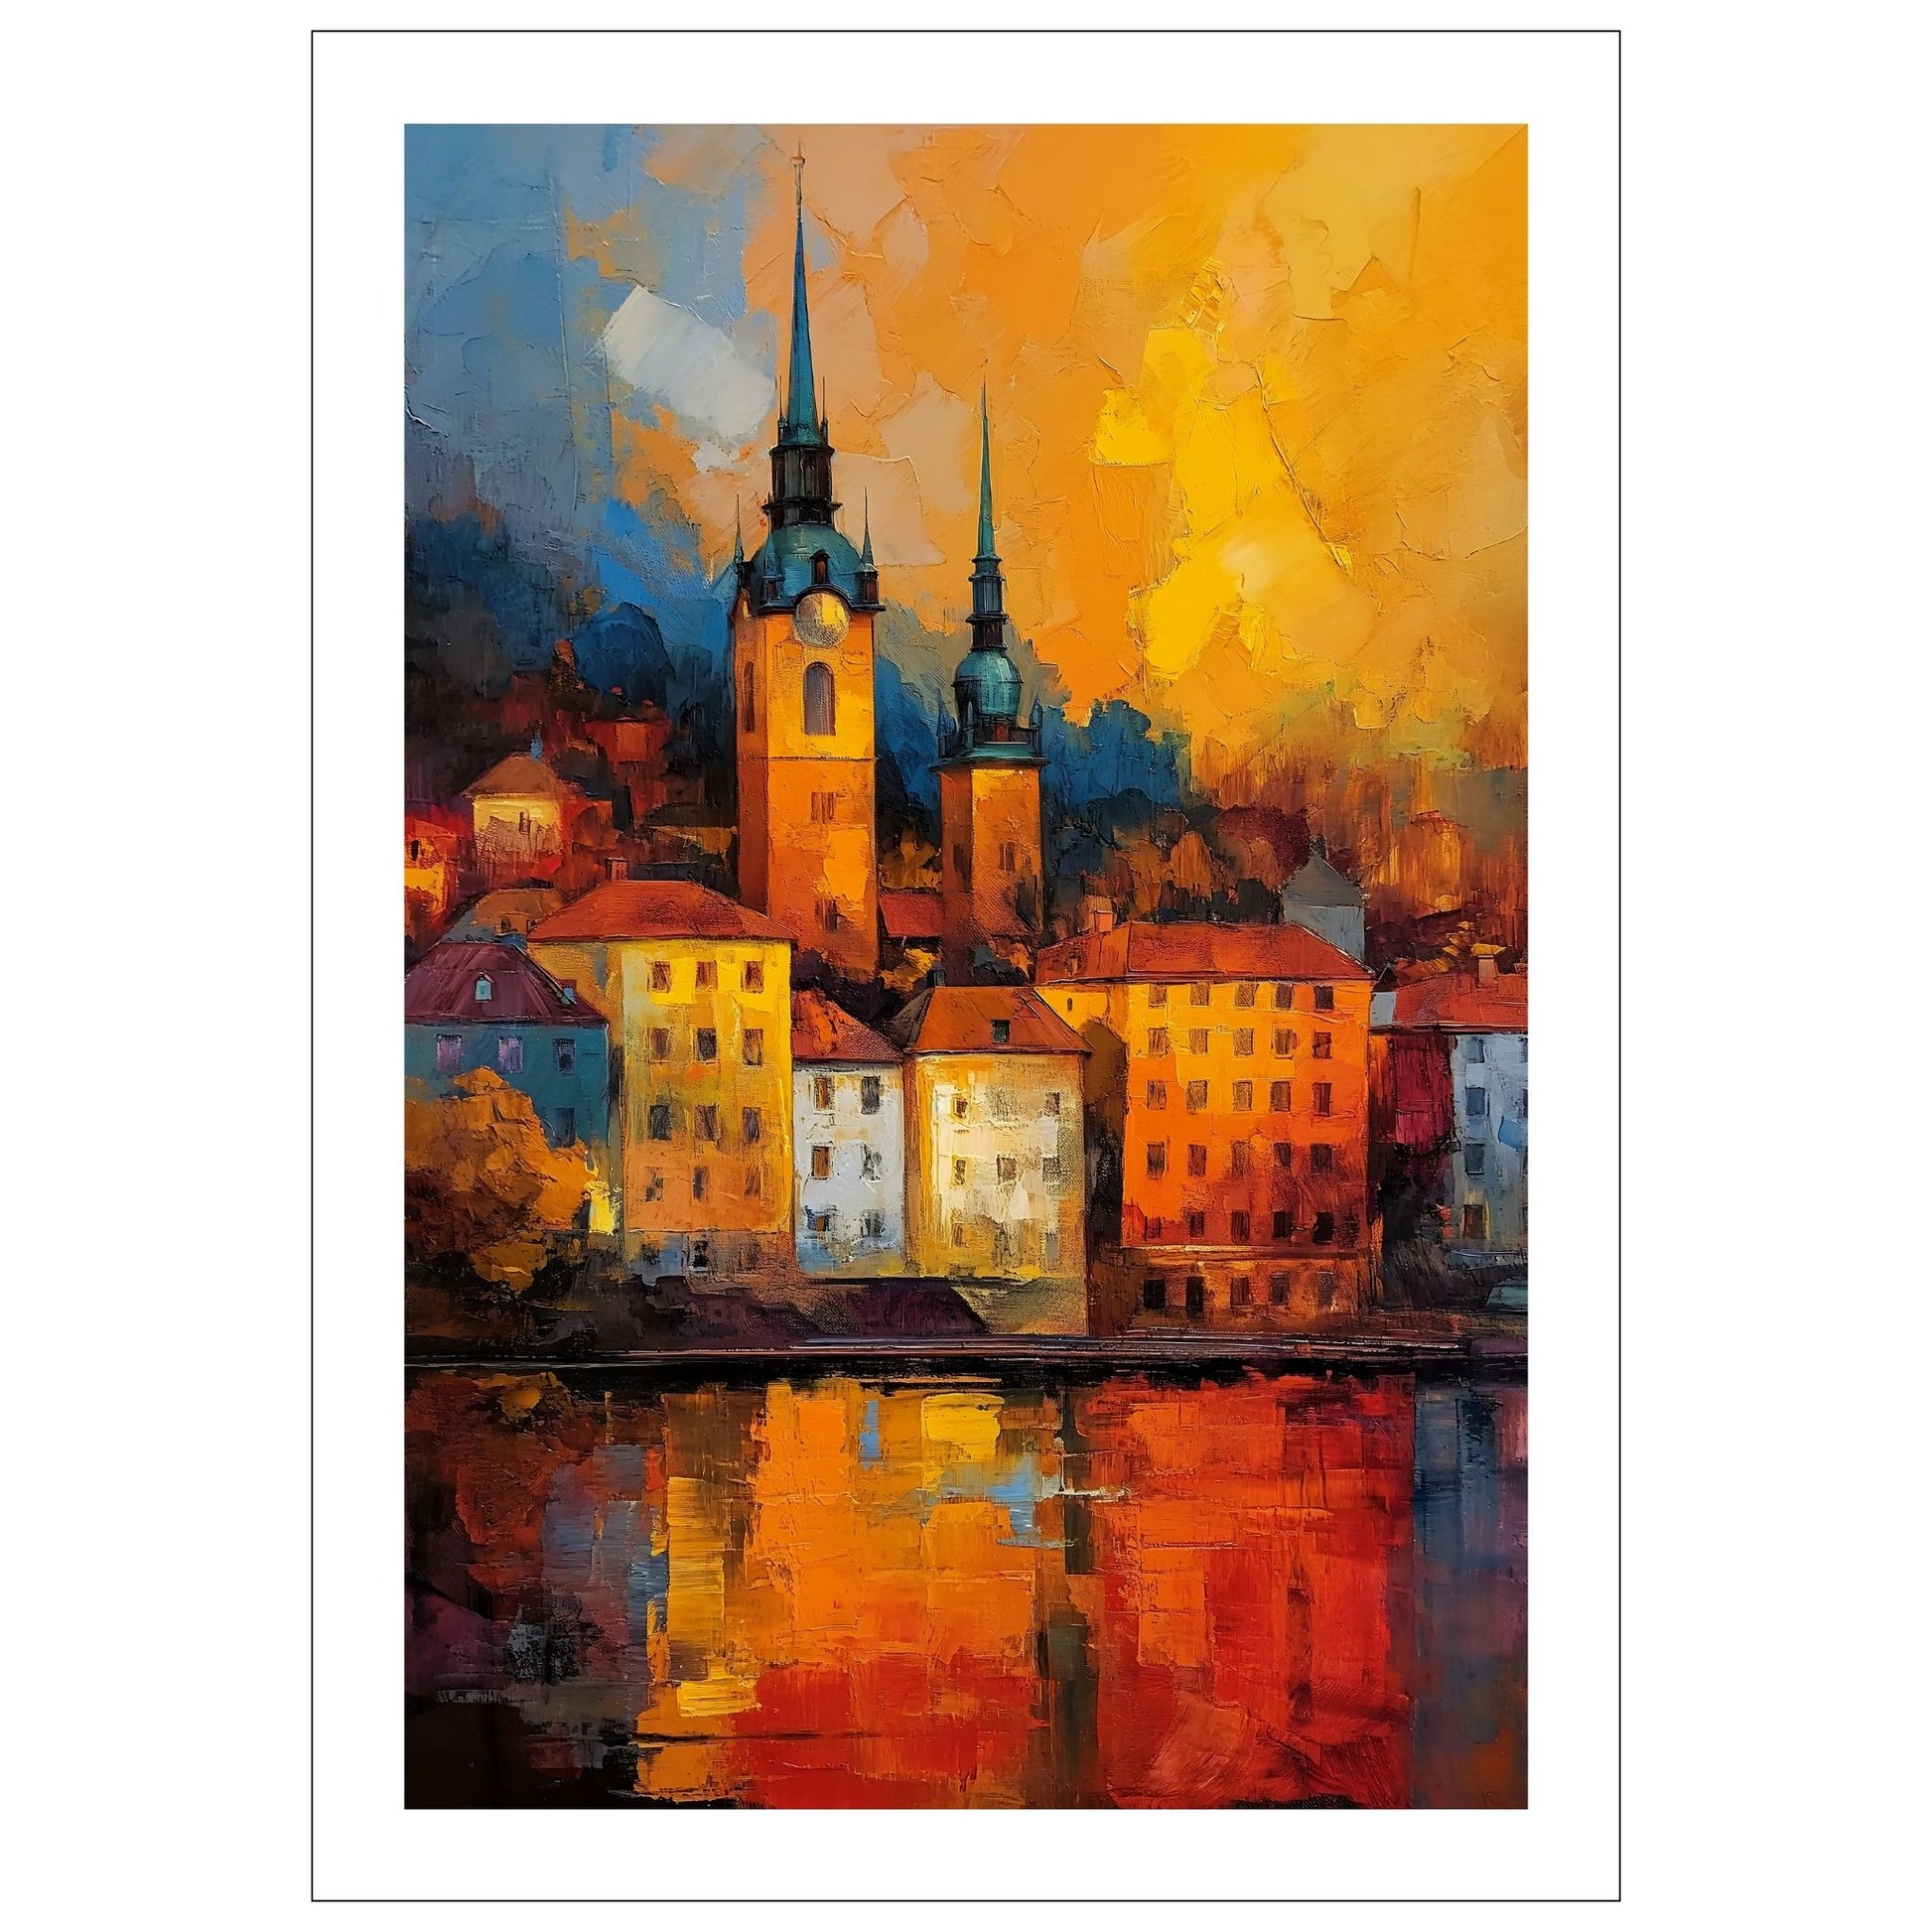 Grafisk oljemaleri av en pittoresk by ved vannet, hvor to majestetiske kirketårn ruver opp mot horisonten. Byen som bader i farger av kveldssolen, skaper et malerisk bilde av ro og skjønnhet.